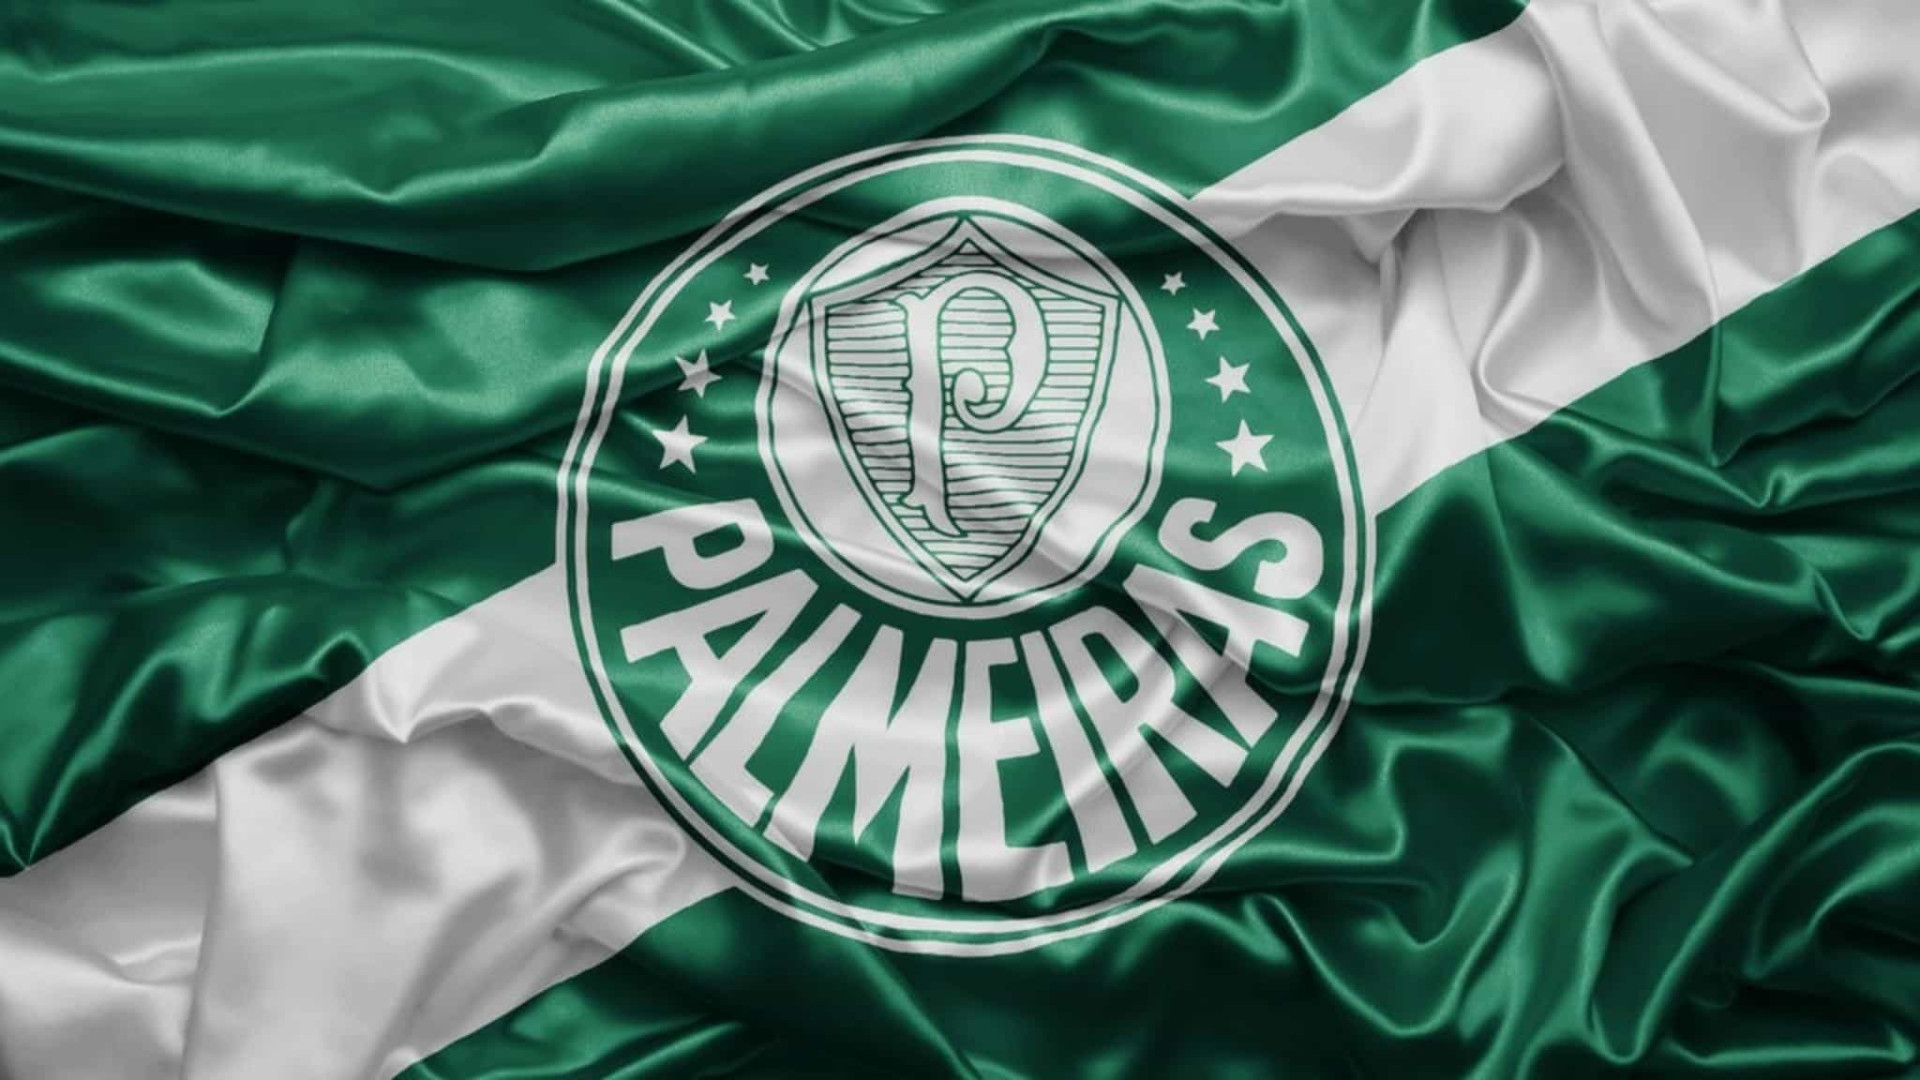 Sociedade Esportiva Palmeiras: The Pride of Brazilian Football